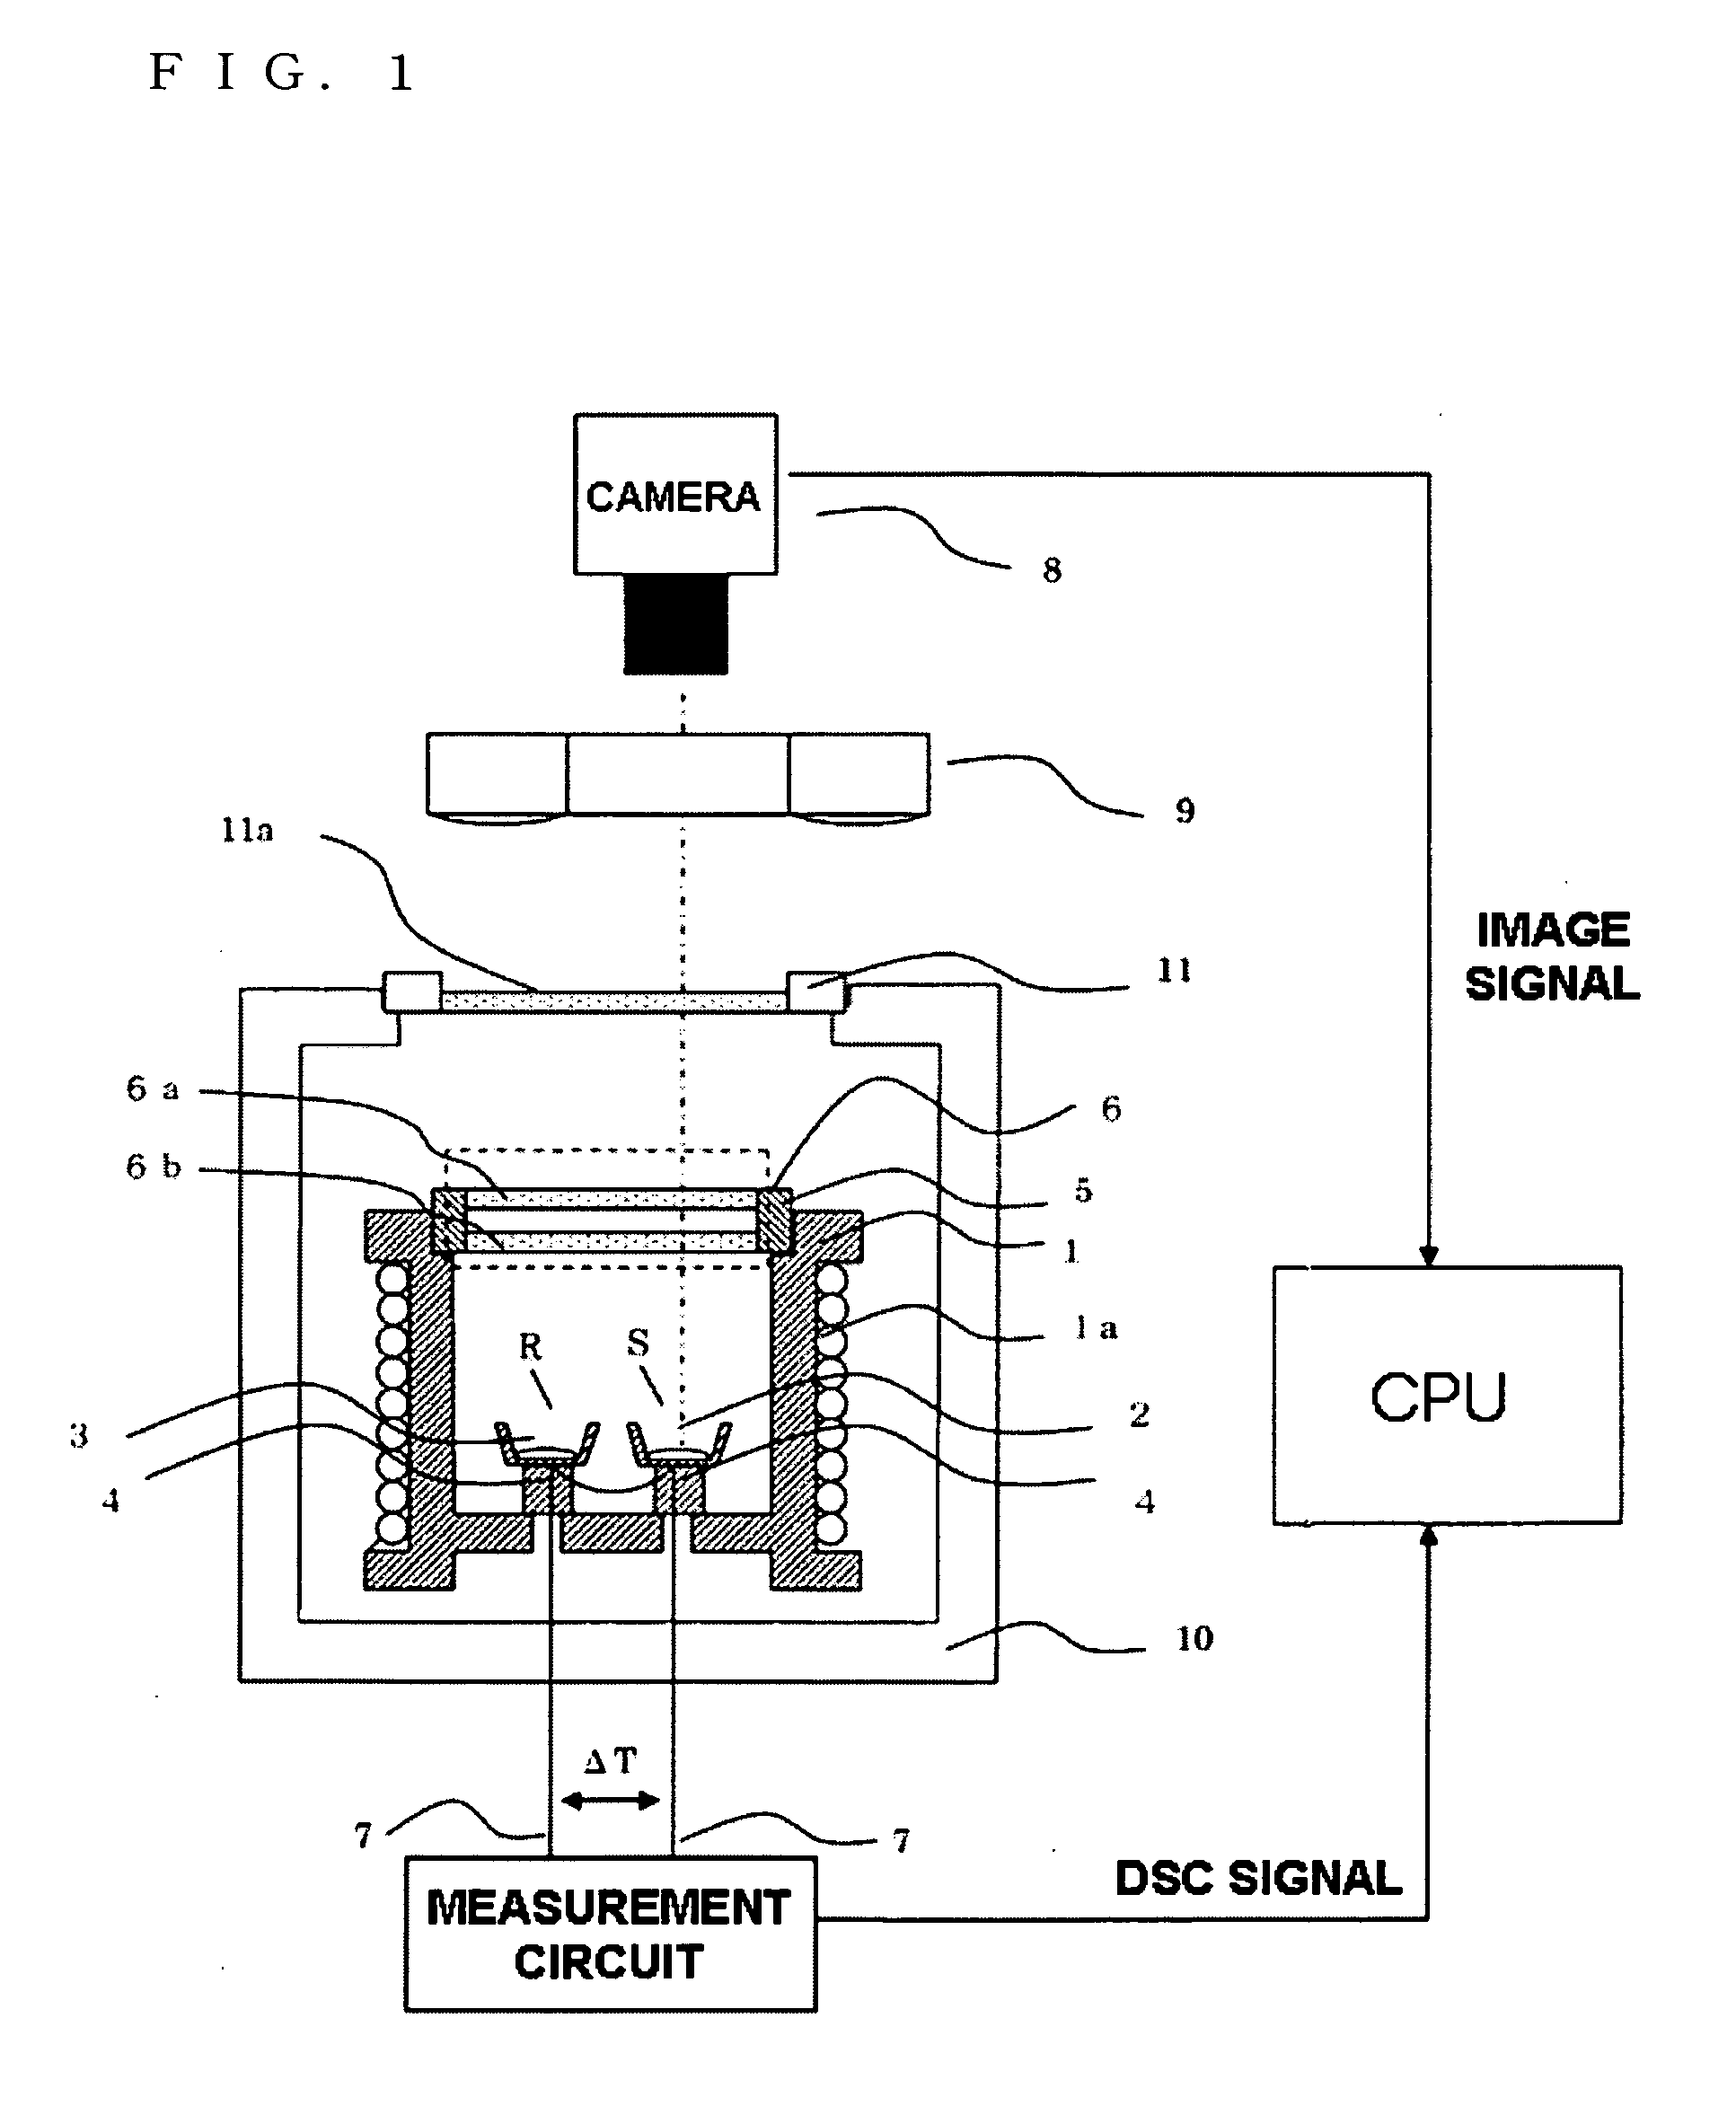 Thermal analysis apparatus